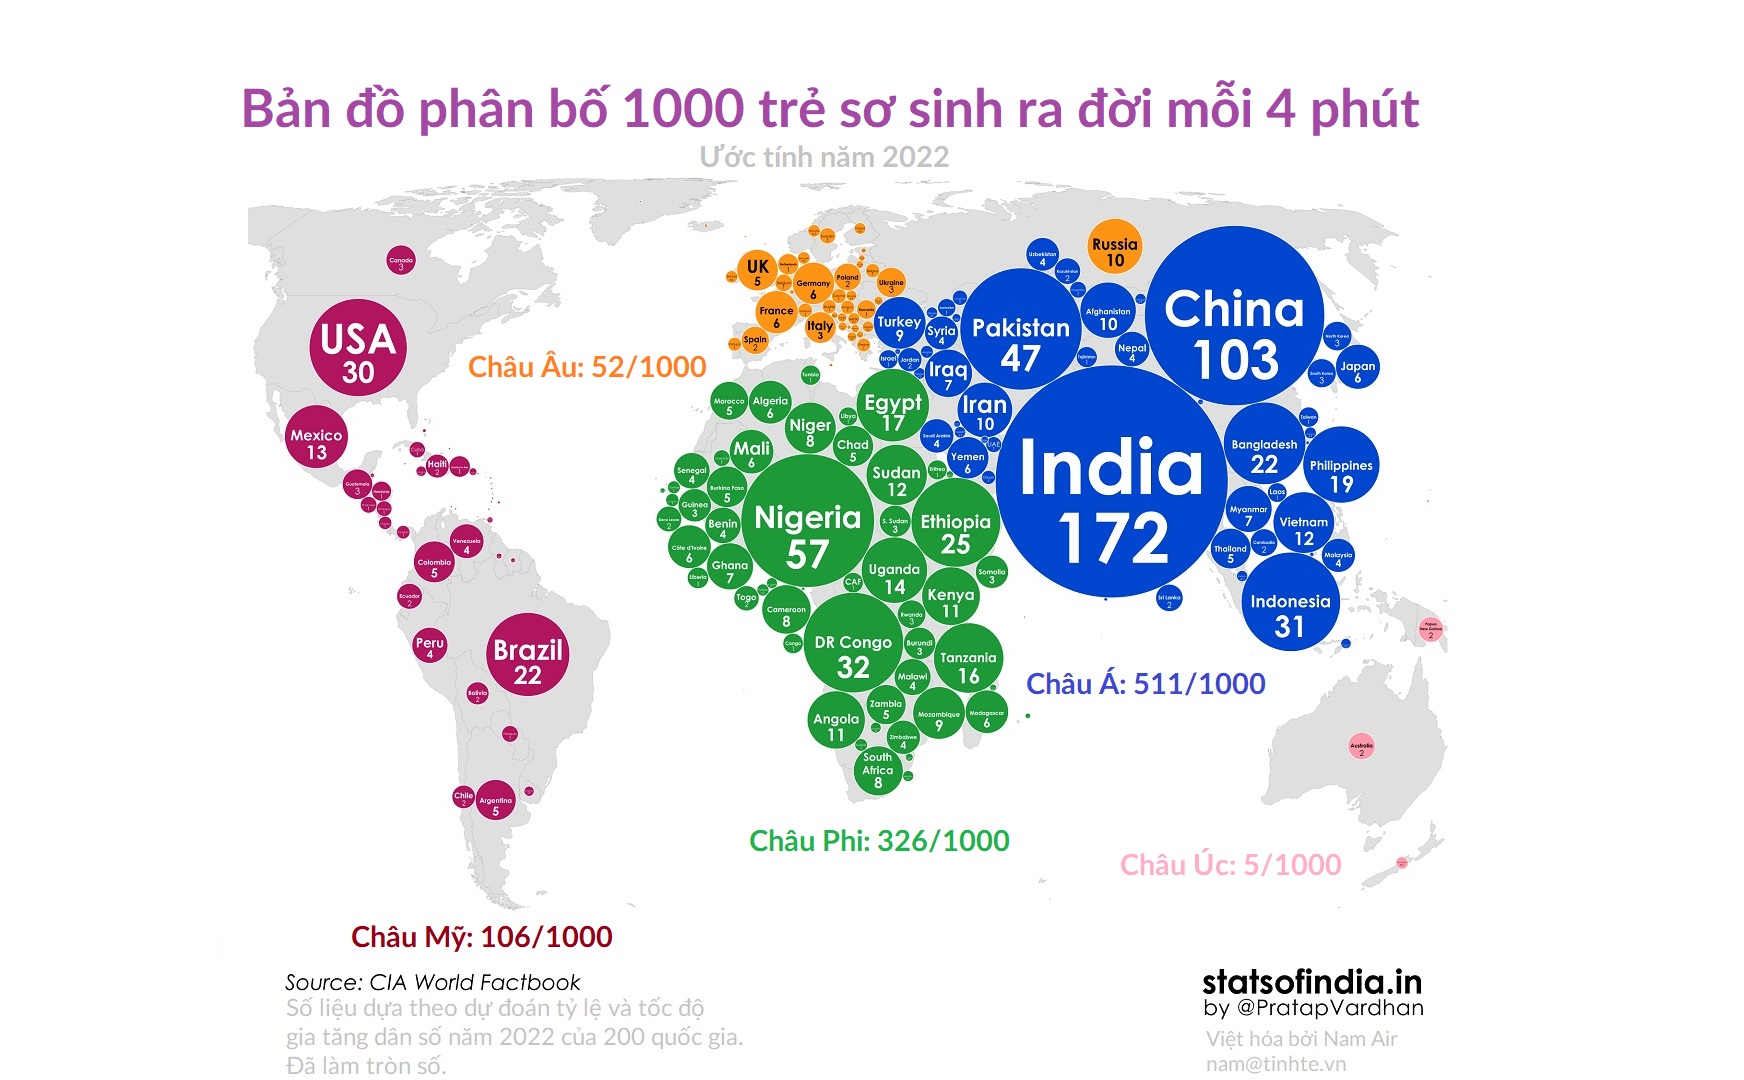 Infographic: Mỗi 4 phút có 1000 trẻ sơ sinh ra đời